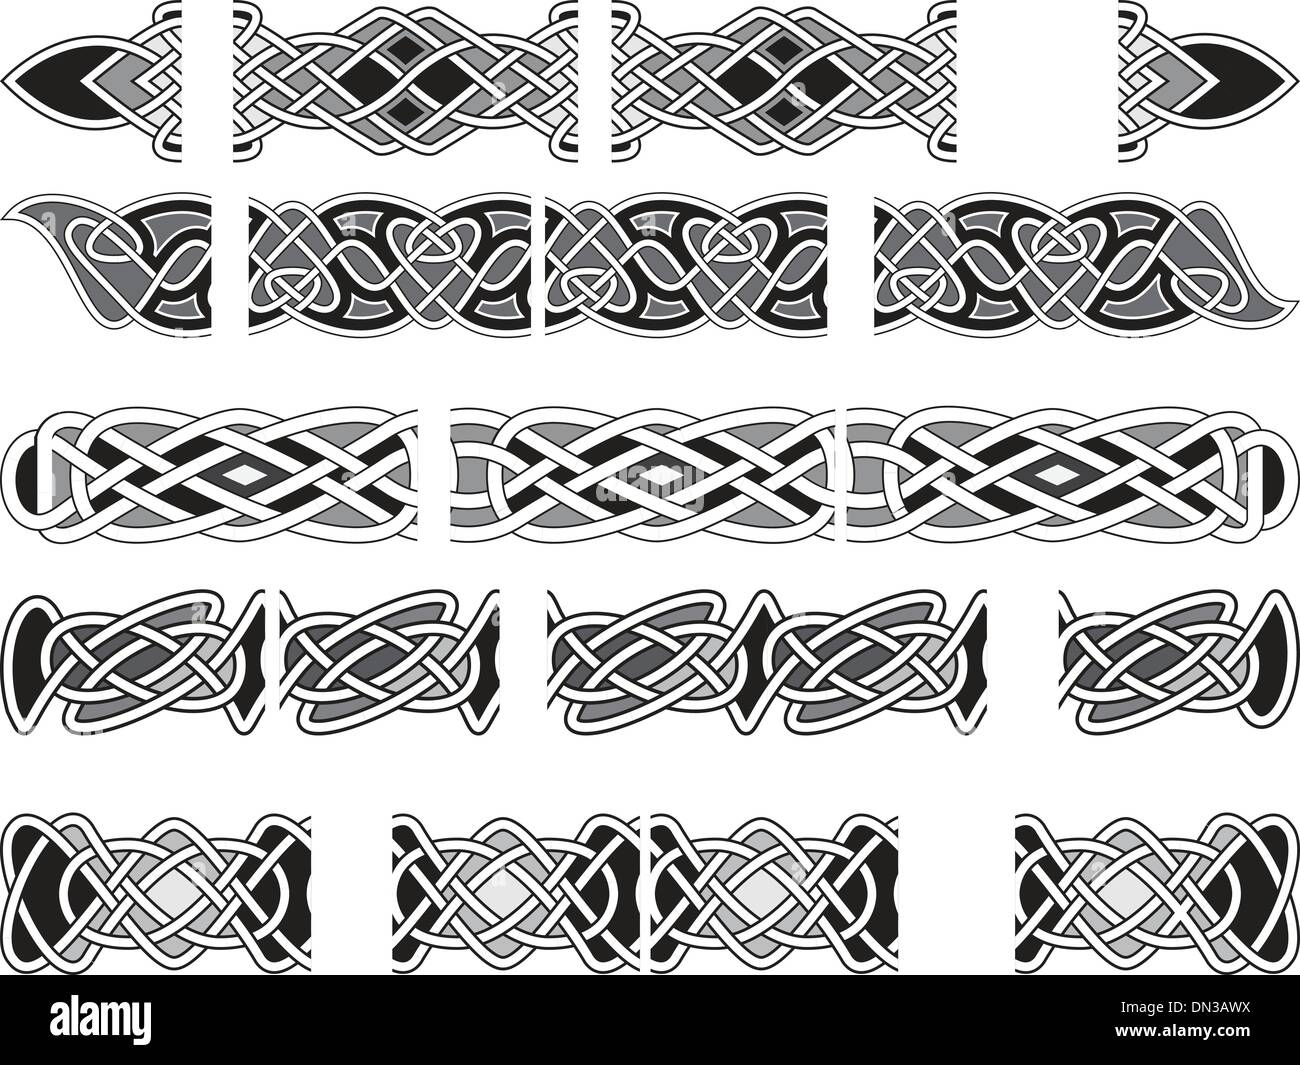 Ornements médiévale celtique Illustration de Vecteur